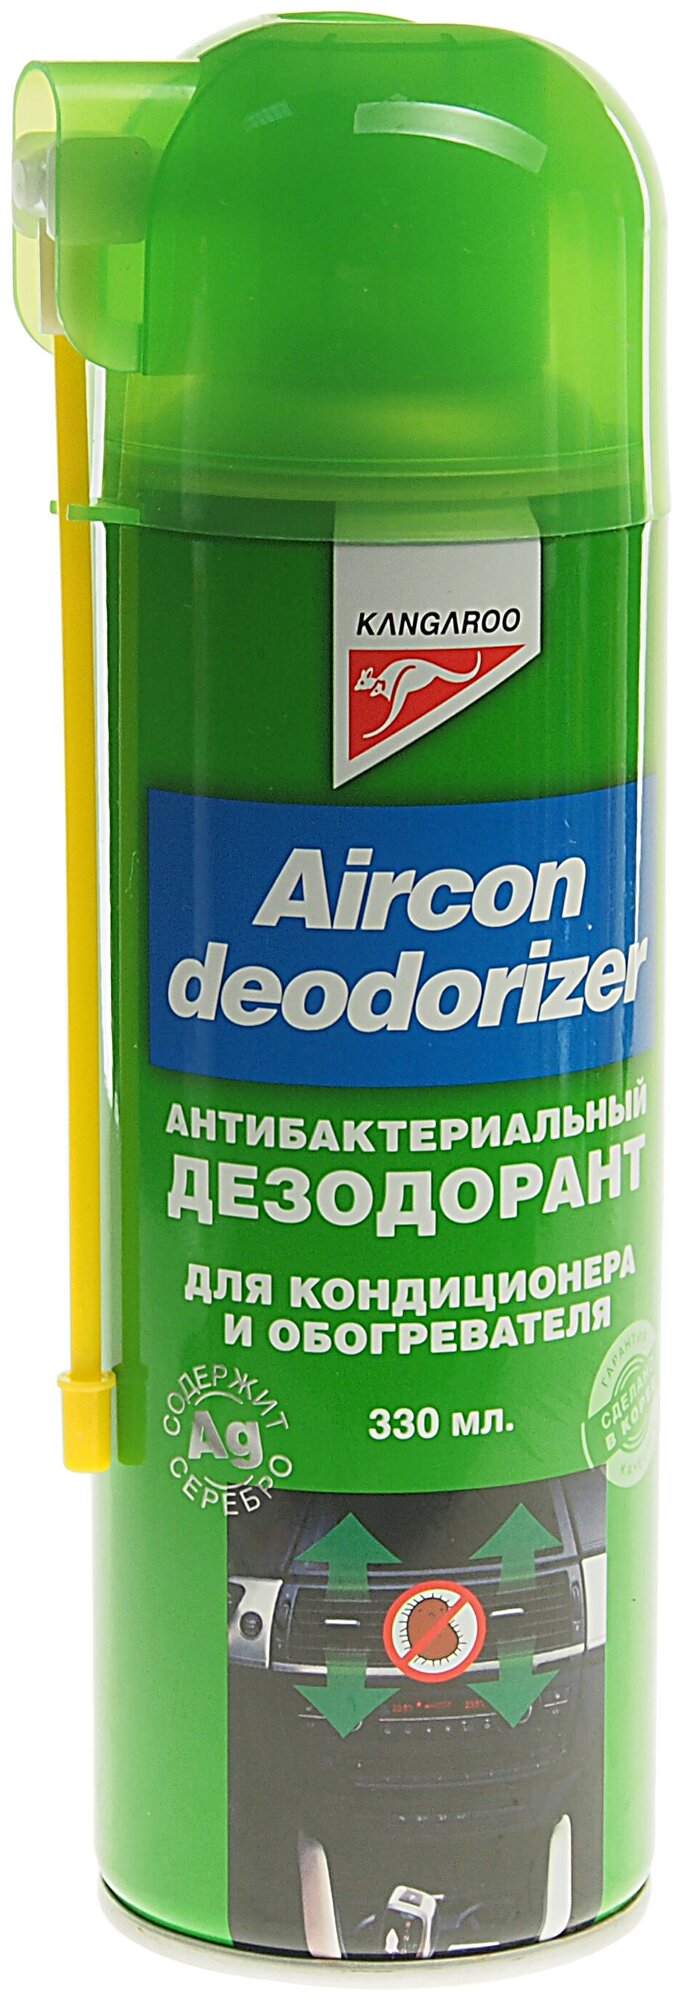 KANGAROO Очиститель системы кондиционирования Aircon Deodorizer 330мл